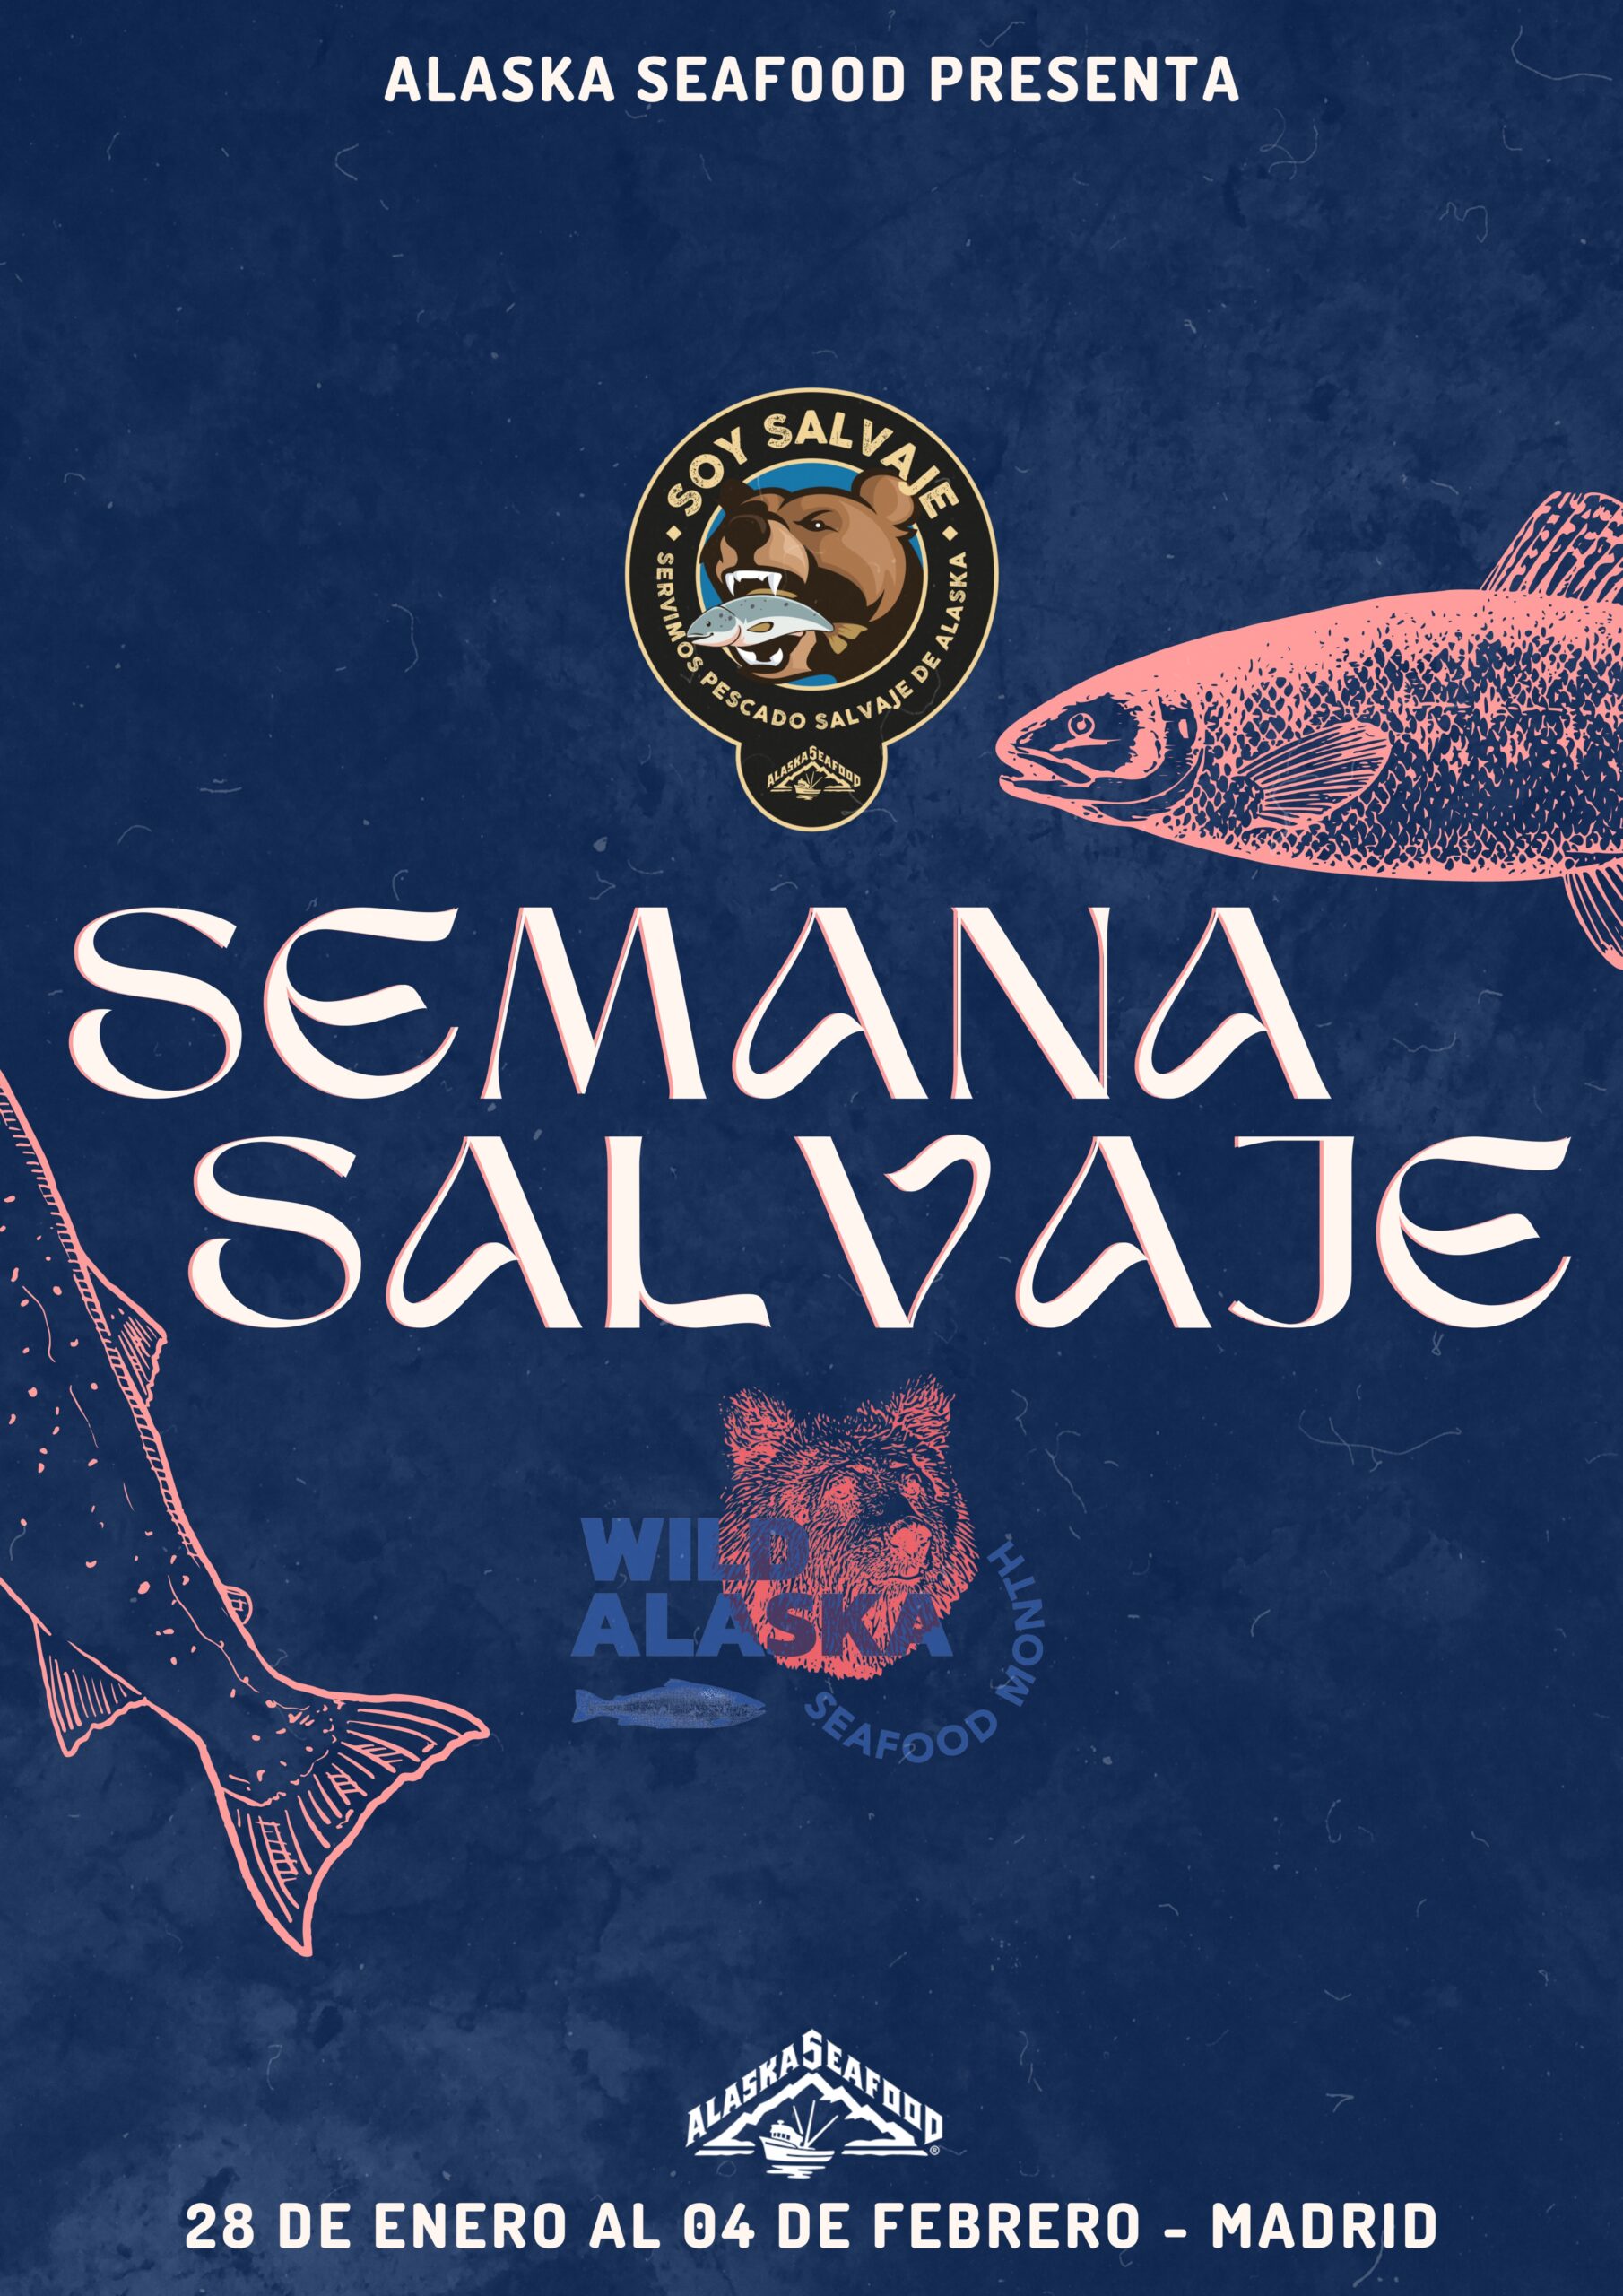 Una selección de restaurantes de Madrid ofrecerá pescado salvaje de Alaska en sus menús durante la Semana Salvaje.